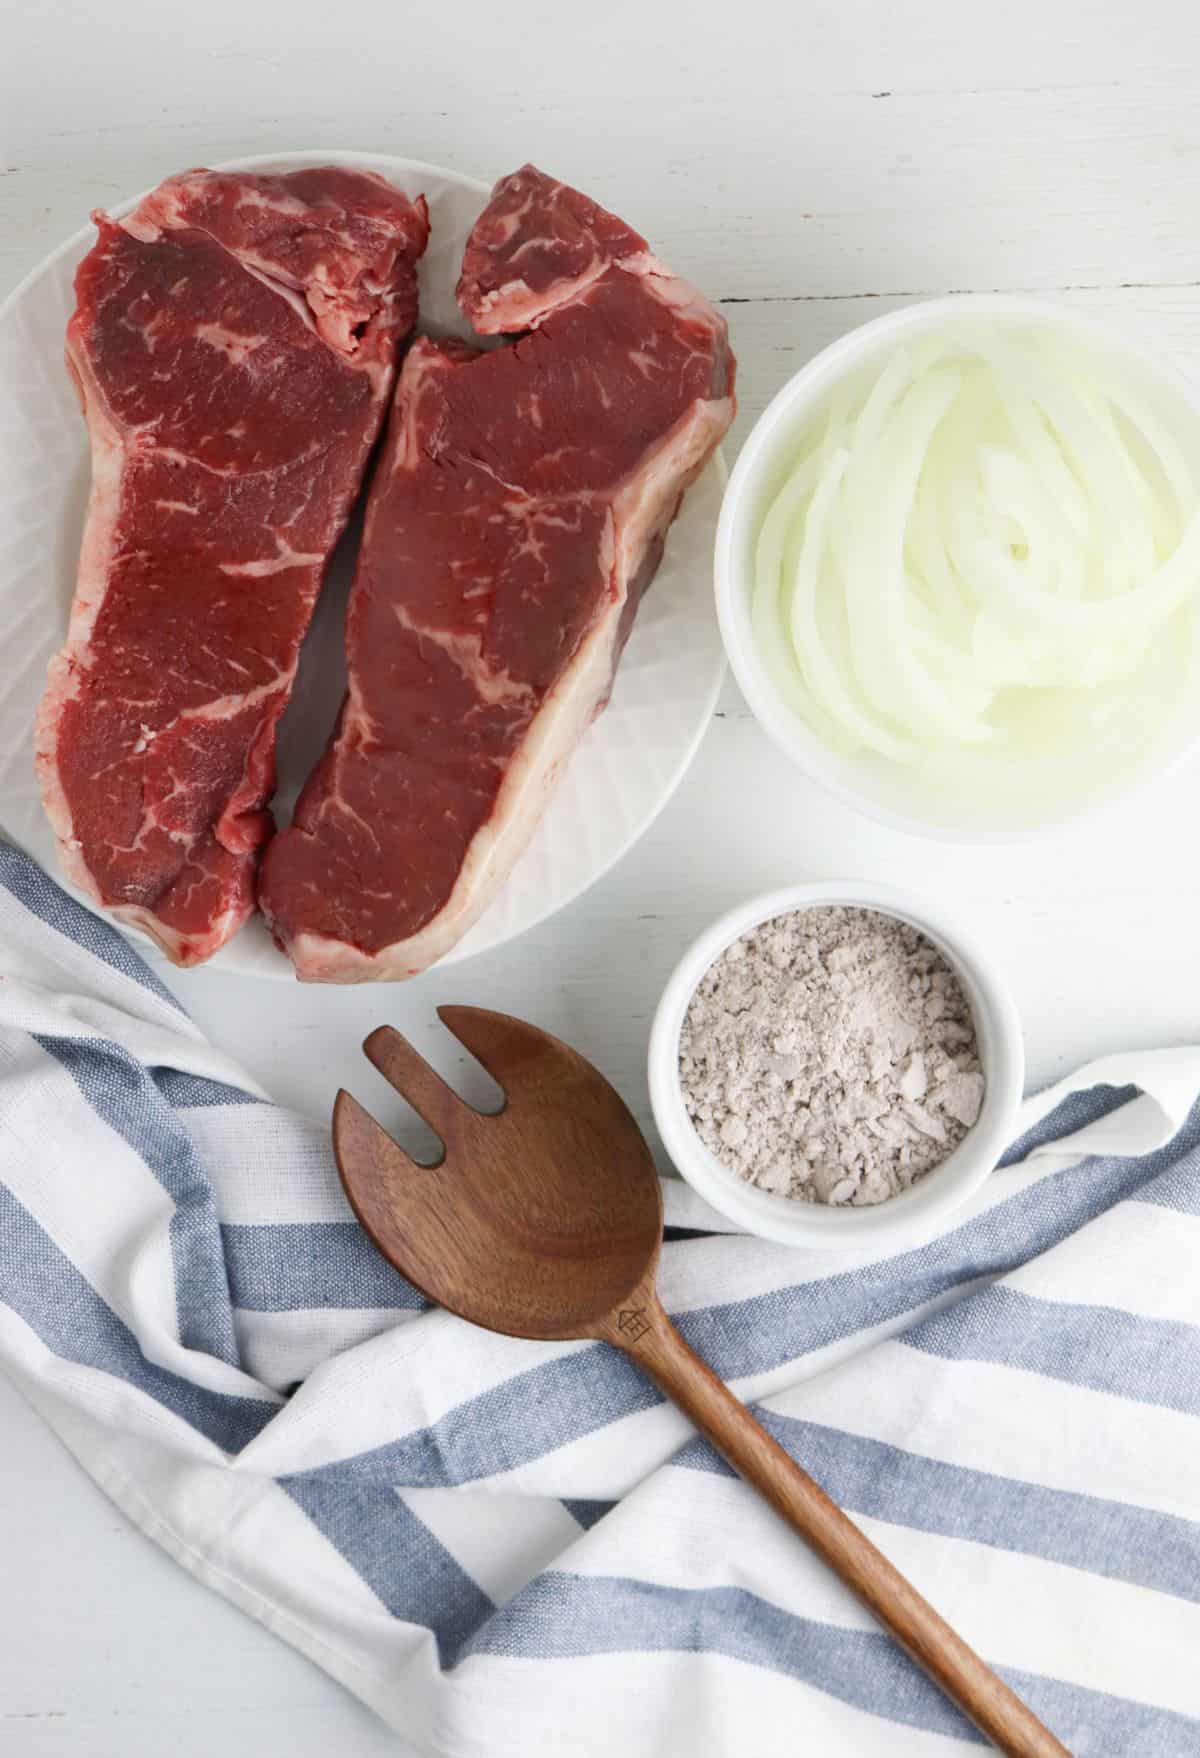 Steak and Gravy ingredients